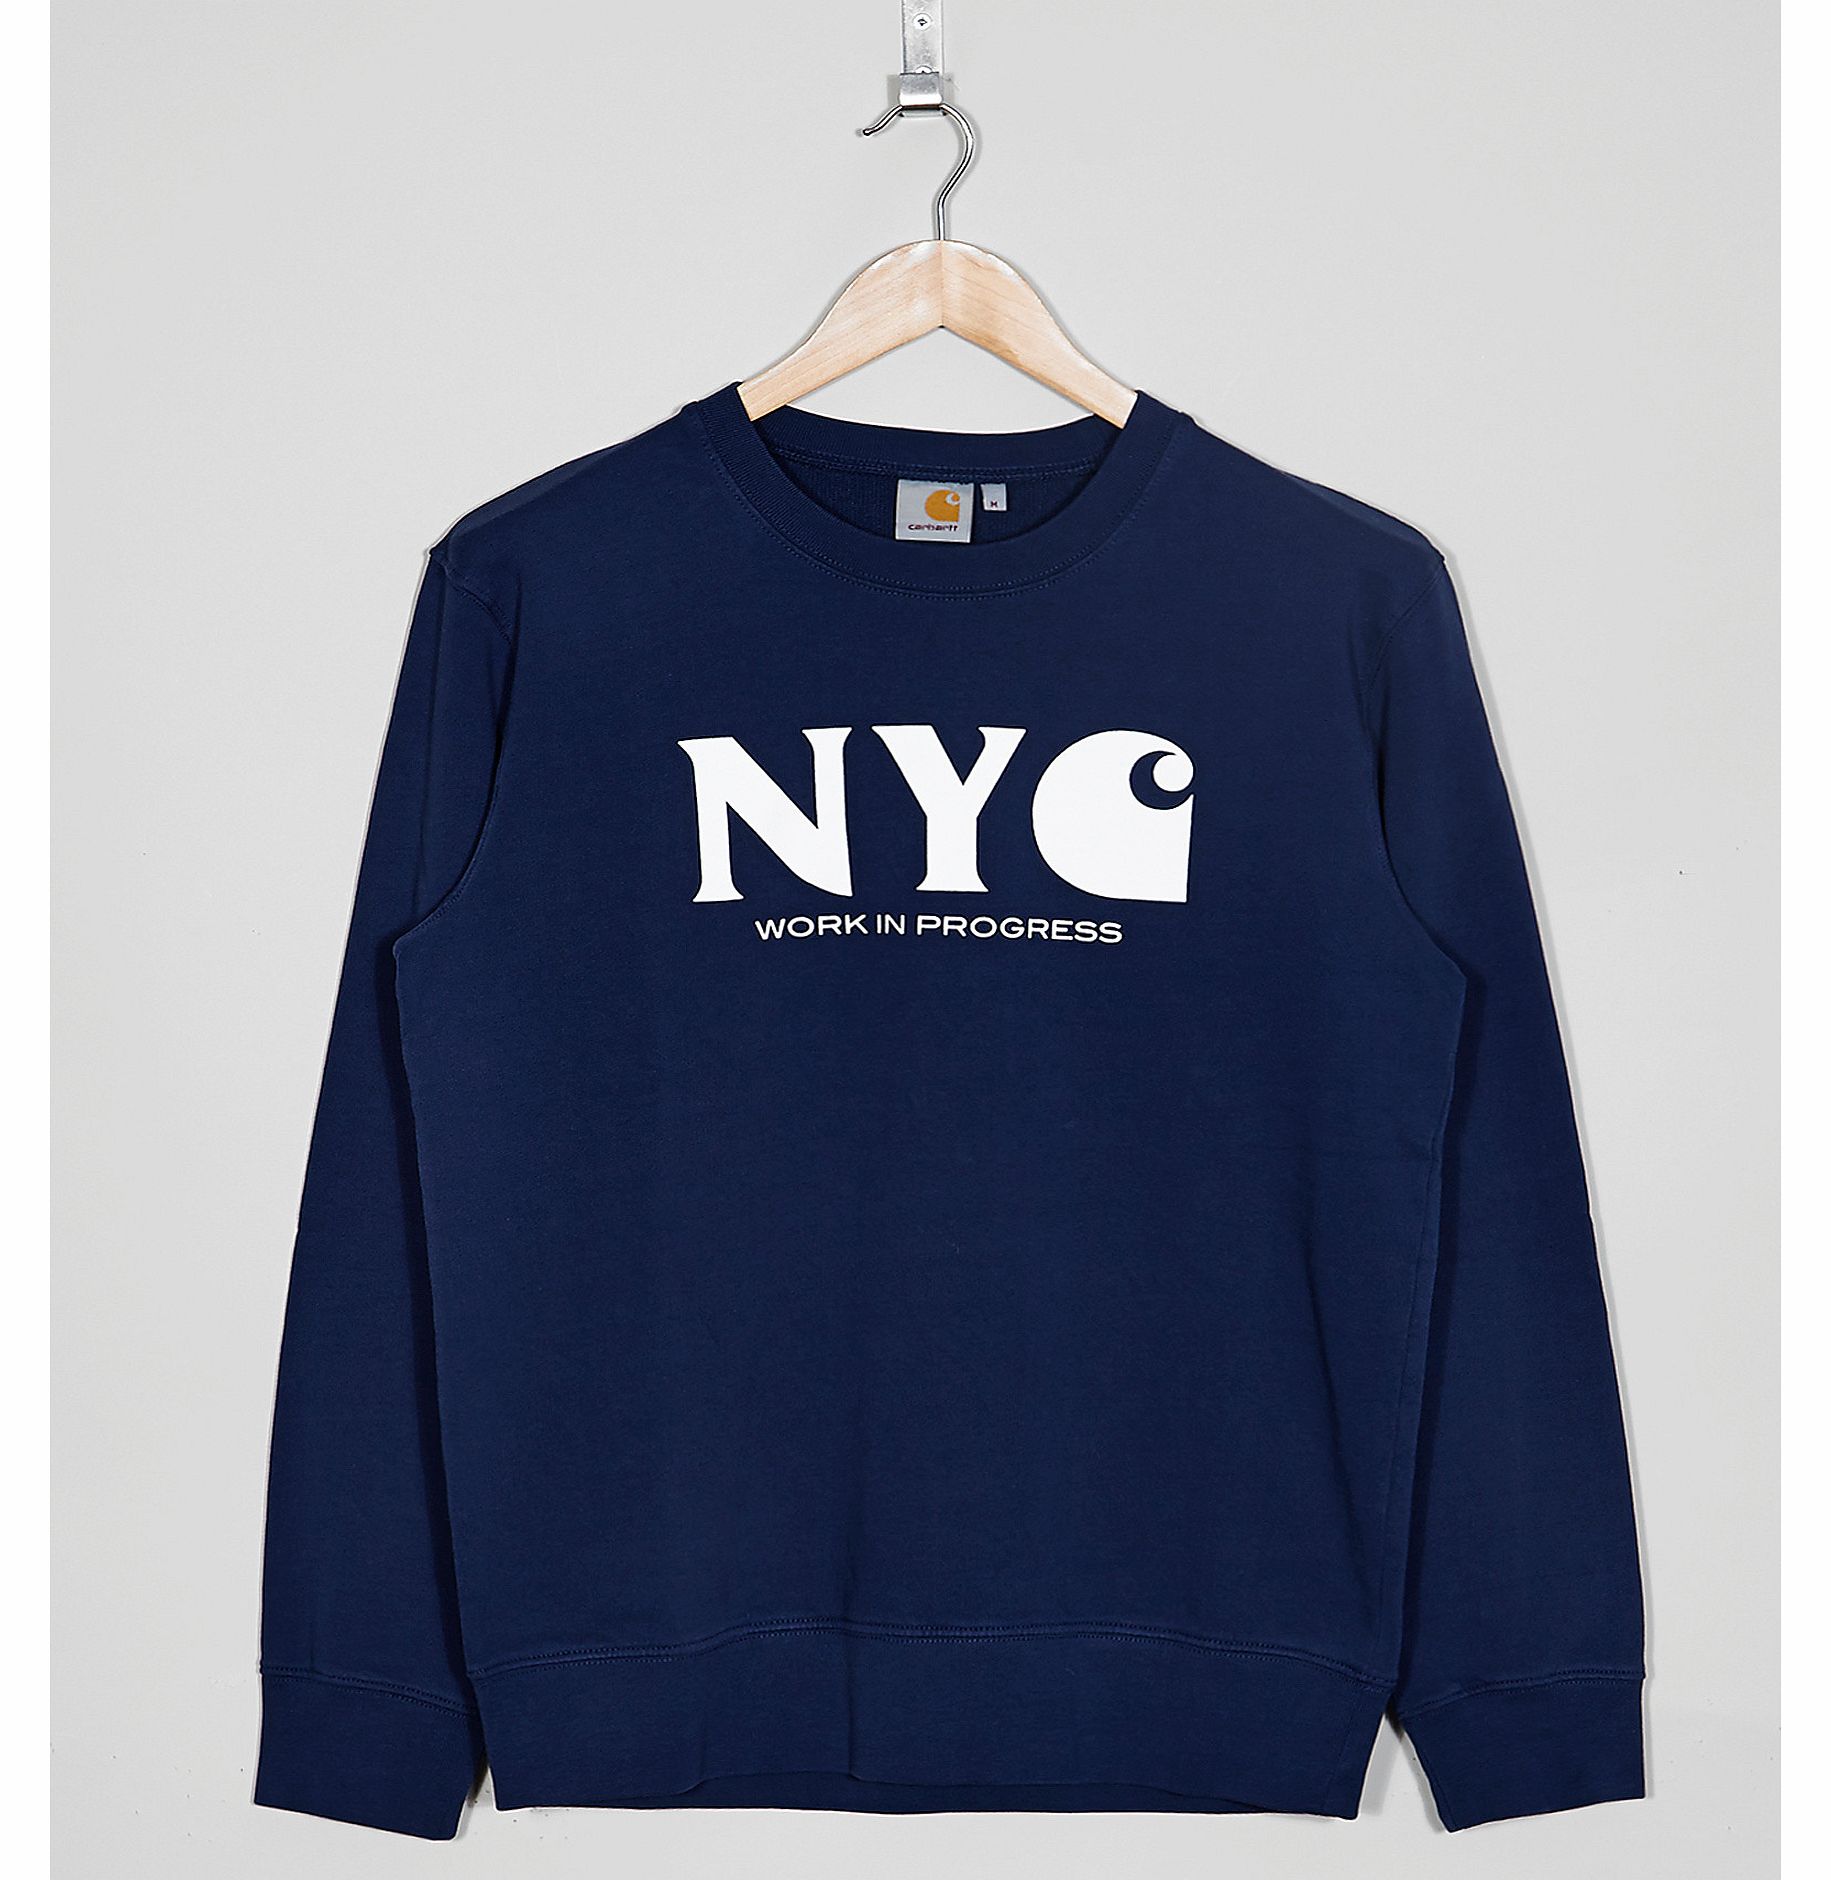 Carhartt WIP New York Sweatshirt - size? Exclusive